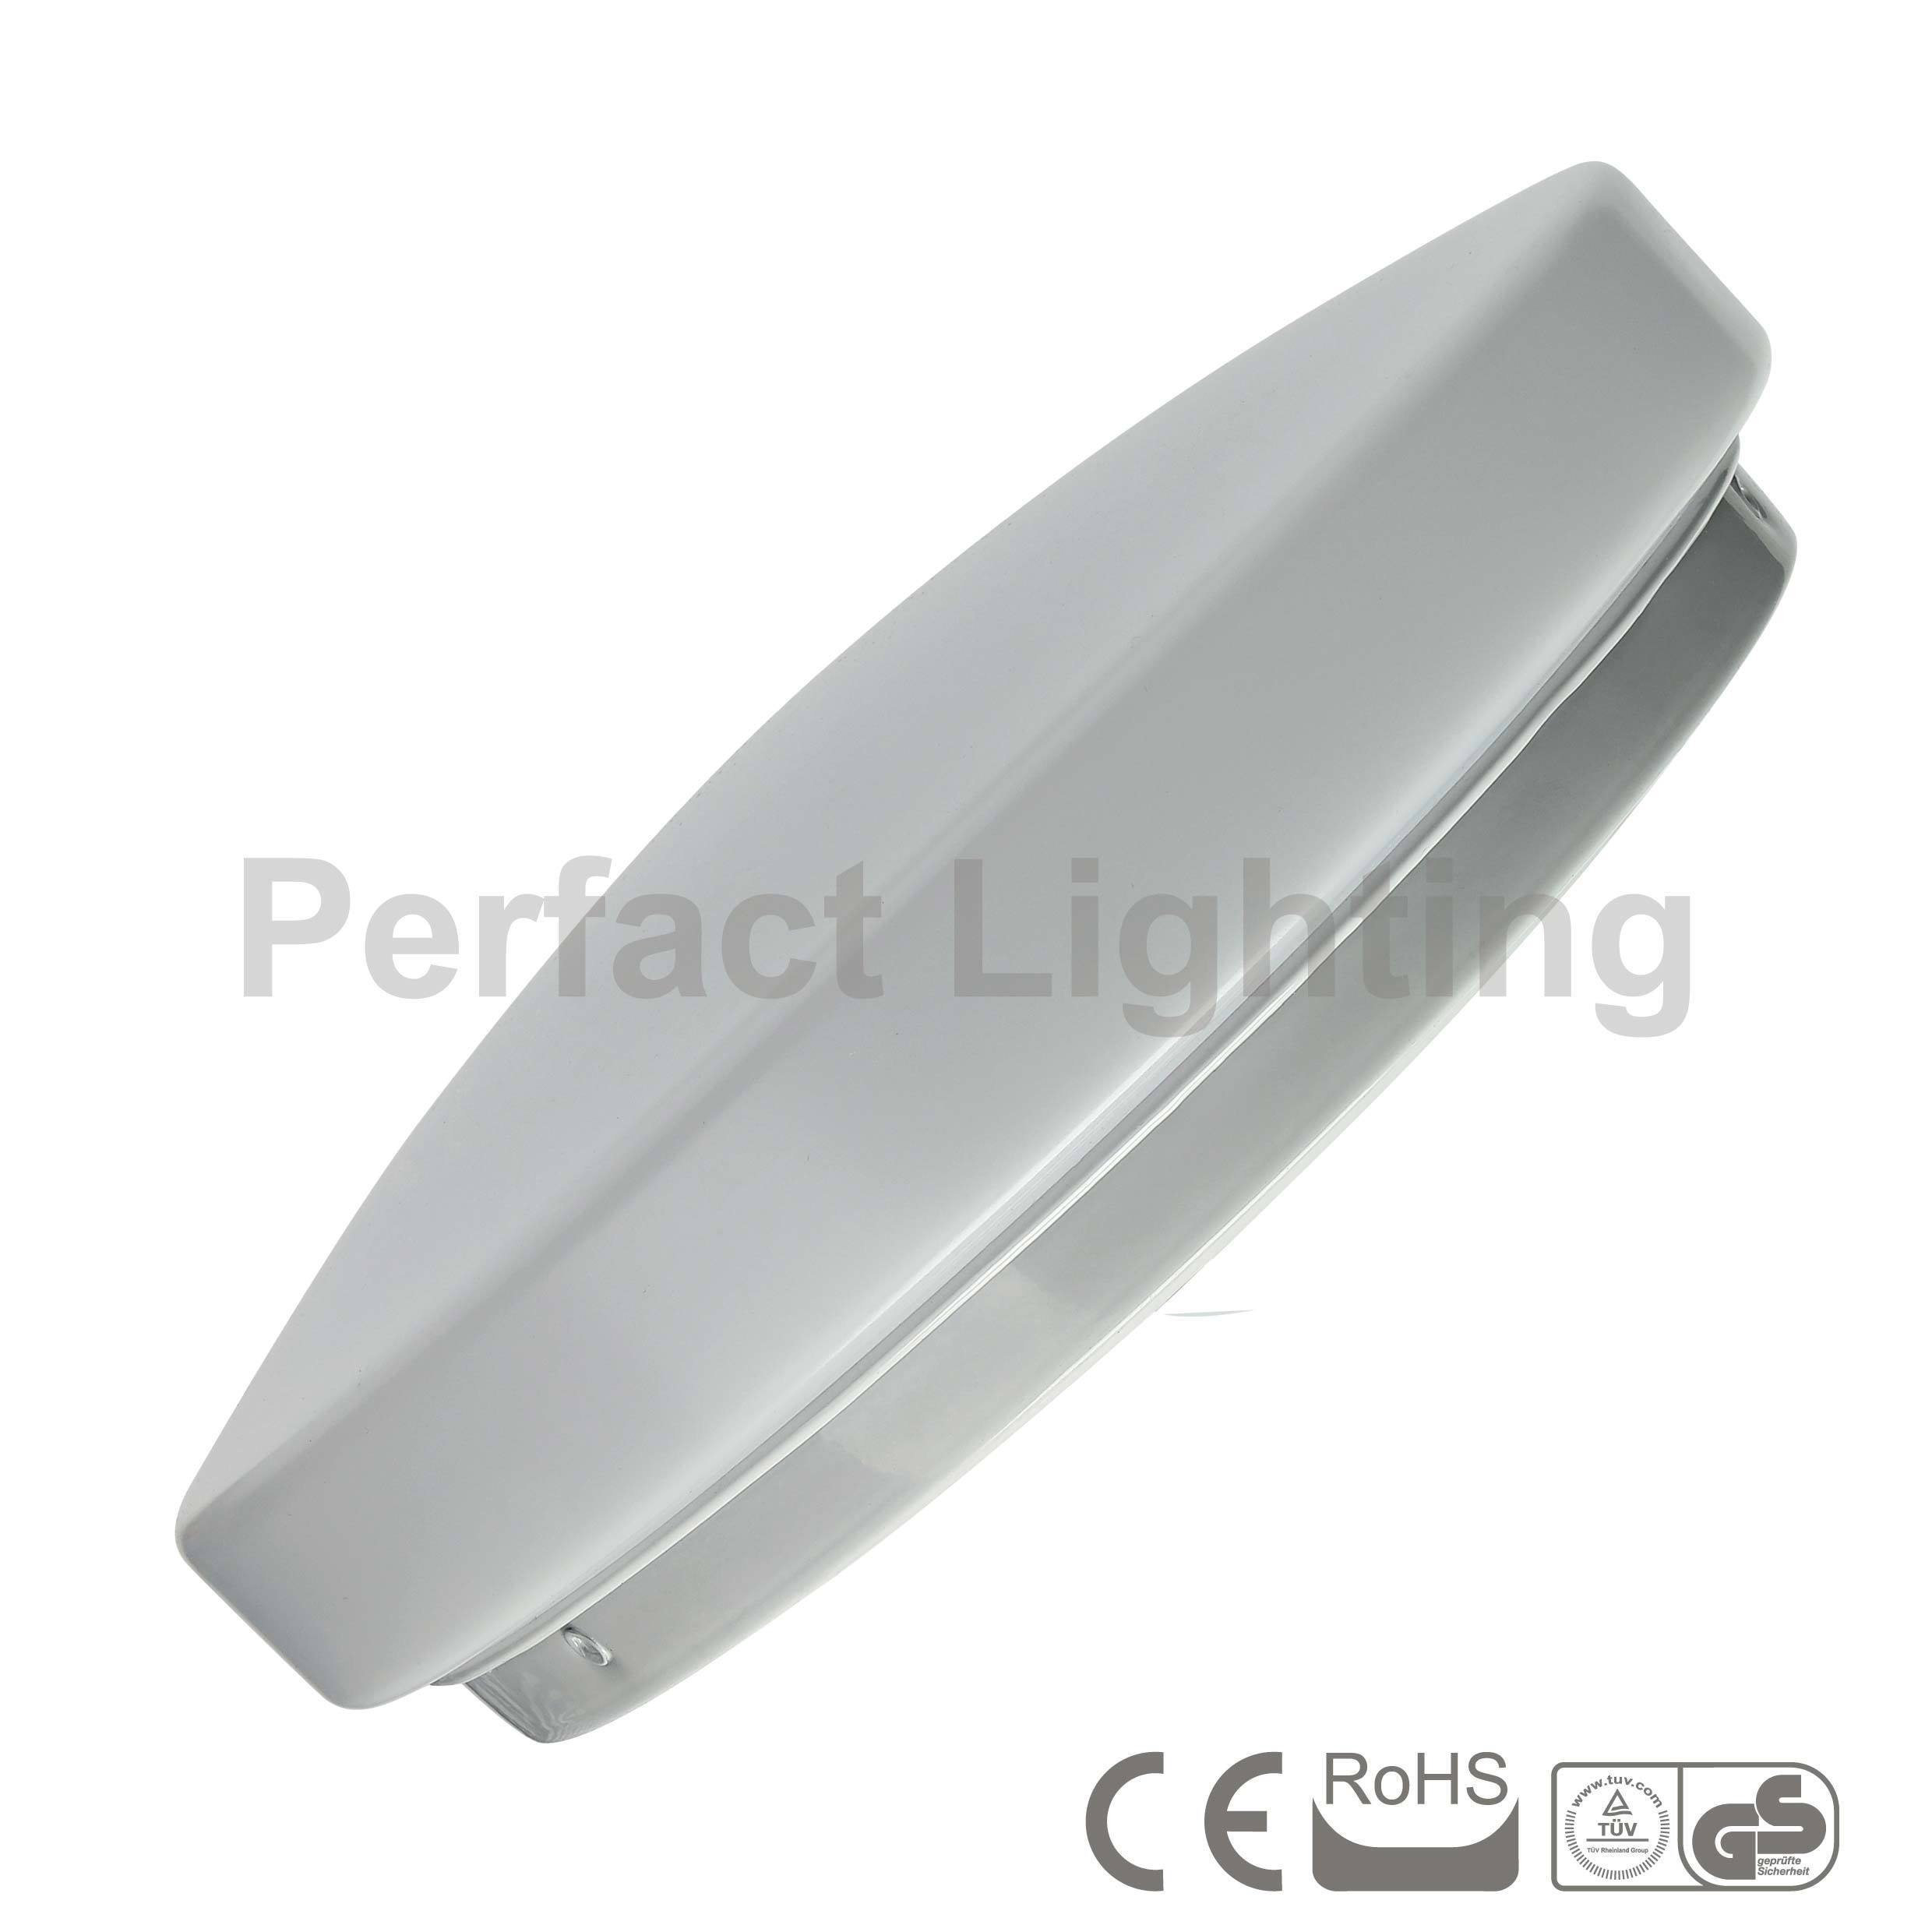 Round LED Ceiling Light (LED-CL)